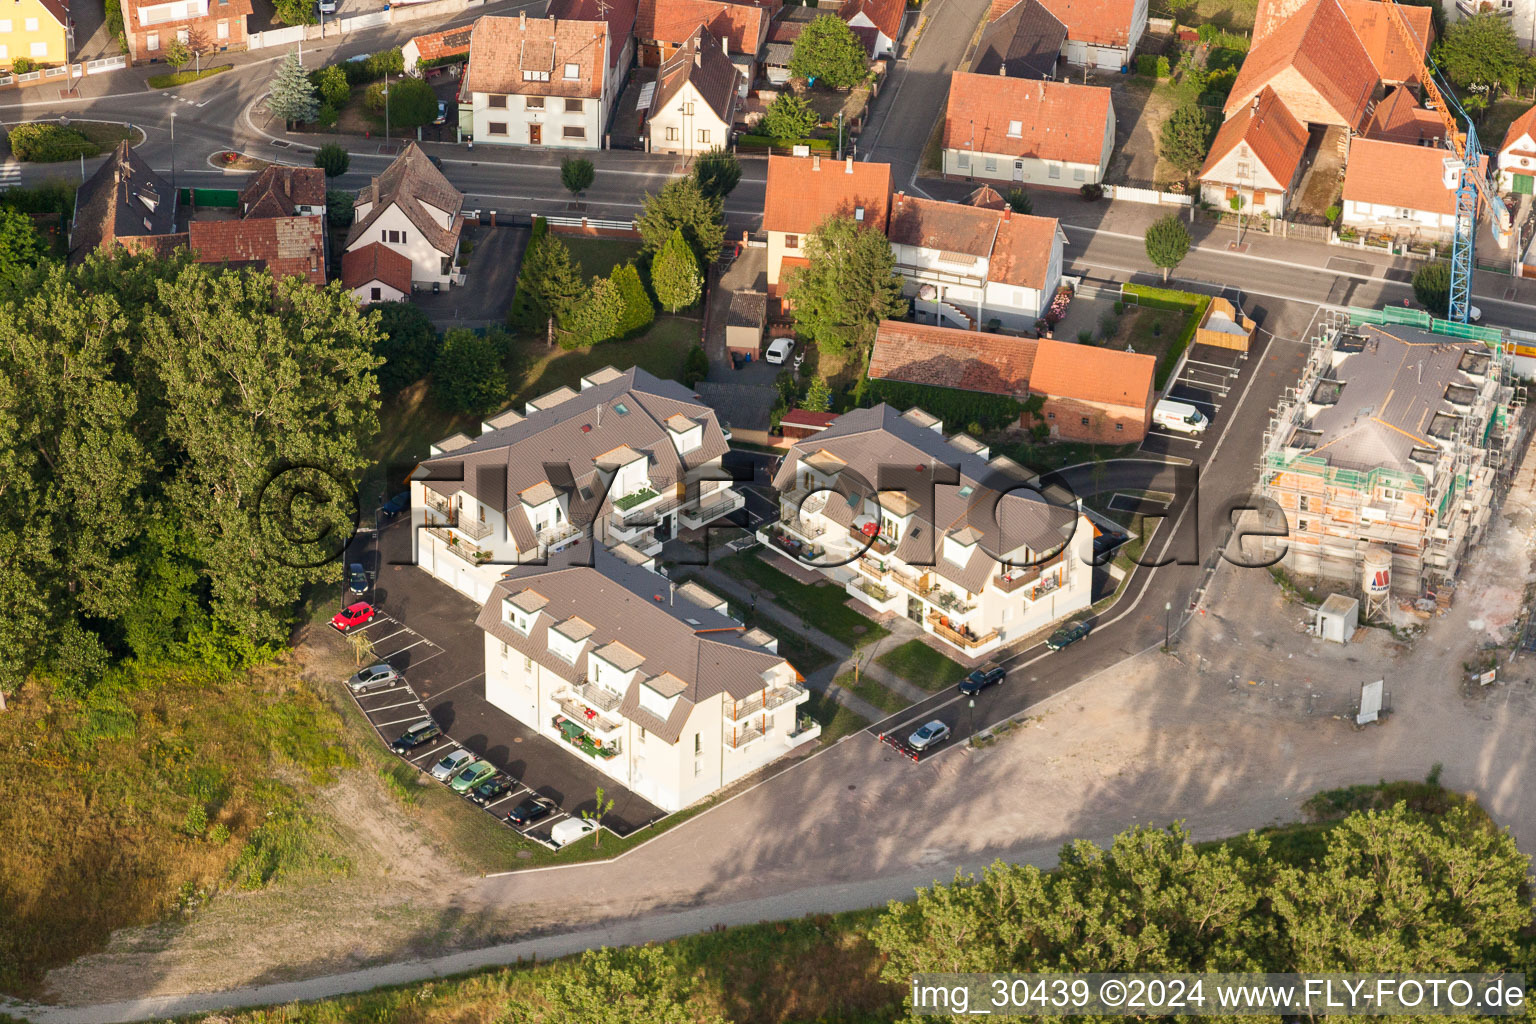 Wohngebiet der Mehrfamilienhaussiedlung impasse des Mirabelles in Oberhoffen-sur-Moder in Grand Est im Bundesland Bas-Rhin, Frankreich